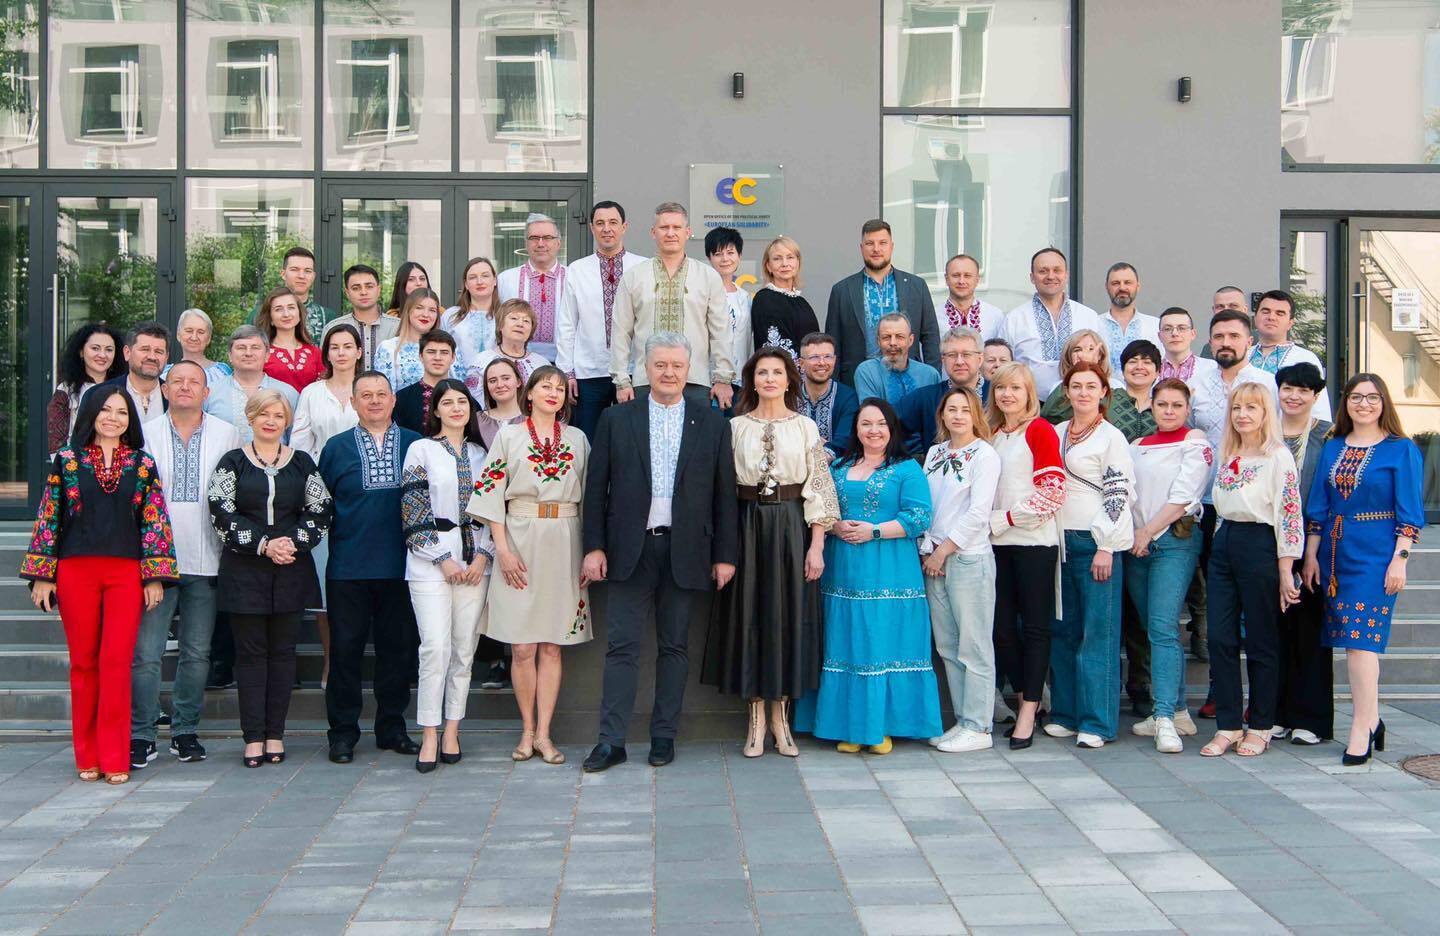 Вышиванка – это присяга на верность Украине: Порошенко с командой показали фото в украинских сорочках